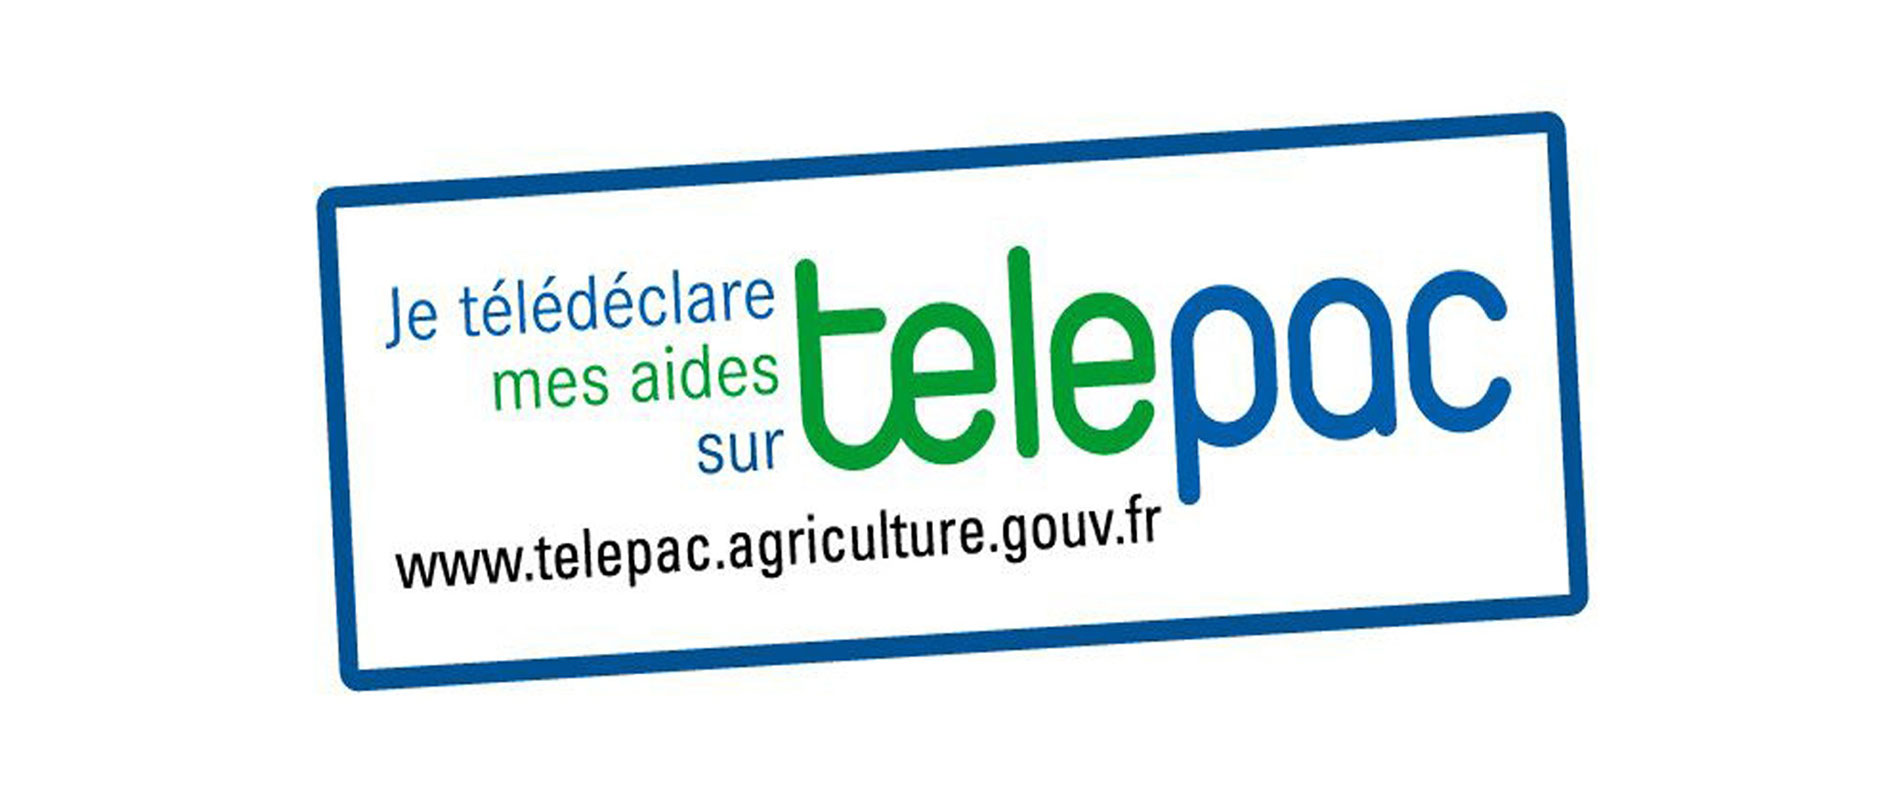 Télépac : la procédure de télédéclaration des aides animales pour la campagne 2022 ouvrira dès le 1er janvier